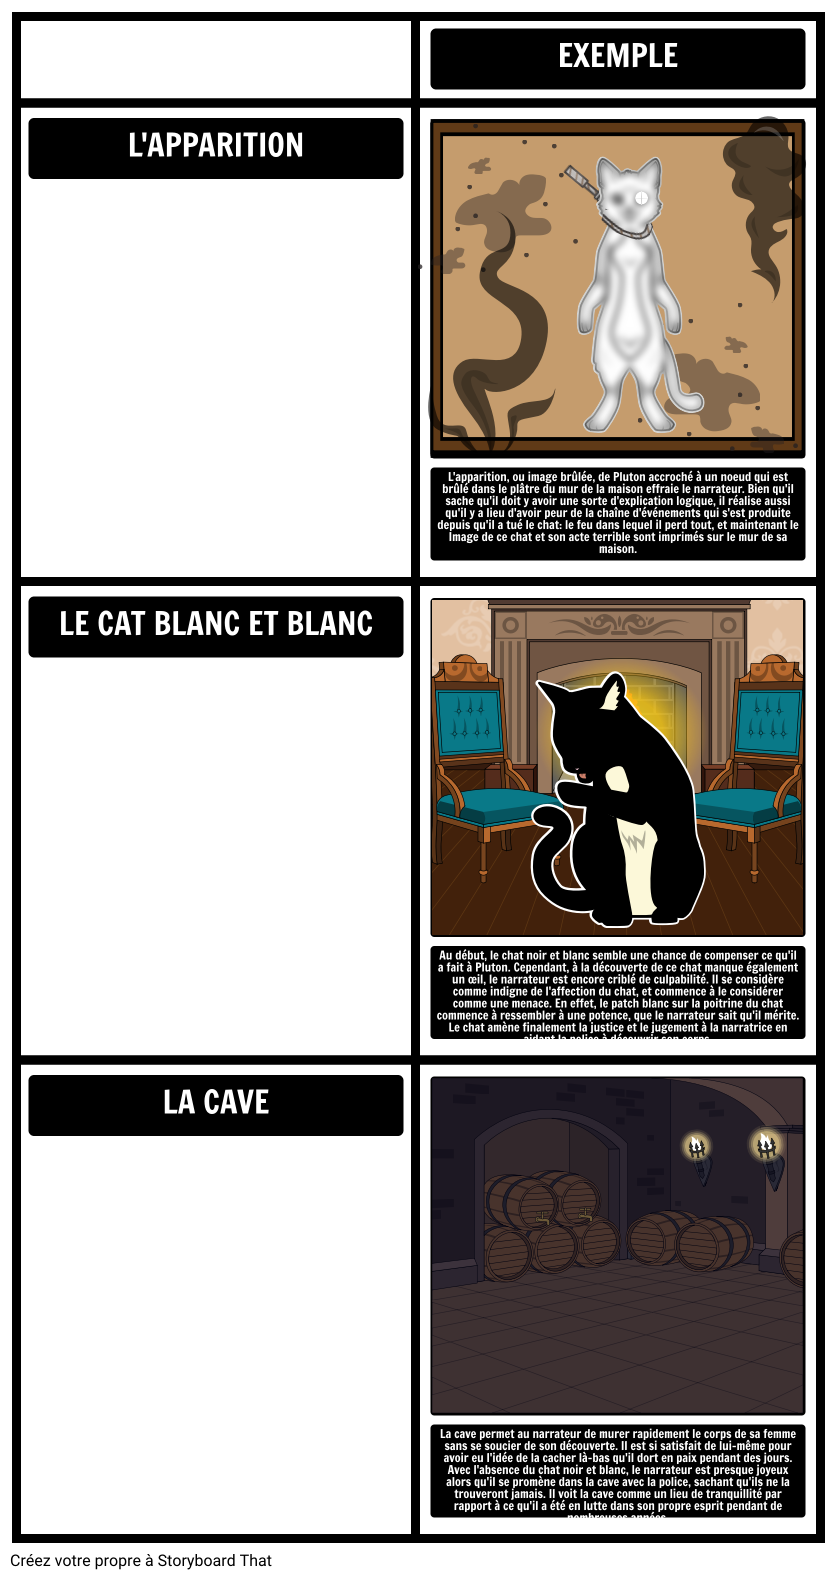 Thèmes, Symboles et Motifs Dans le Chat Noir